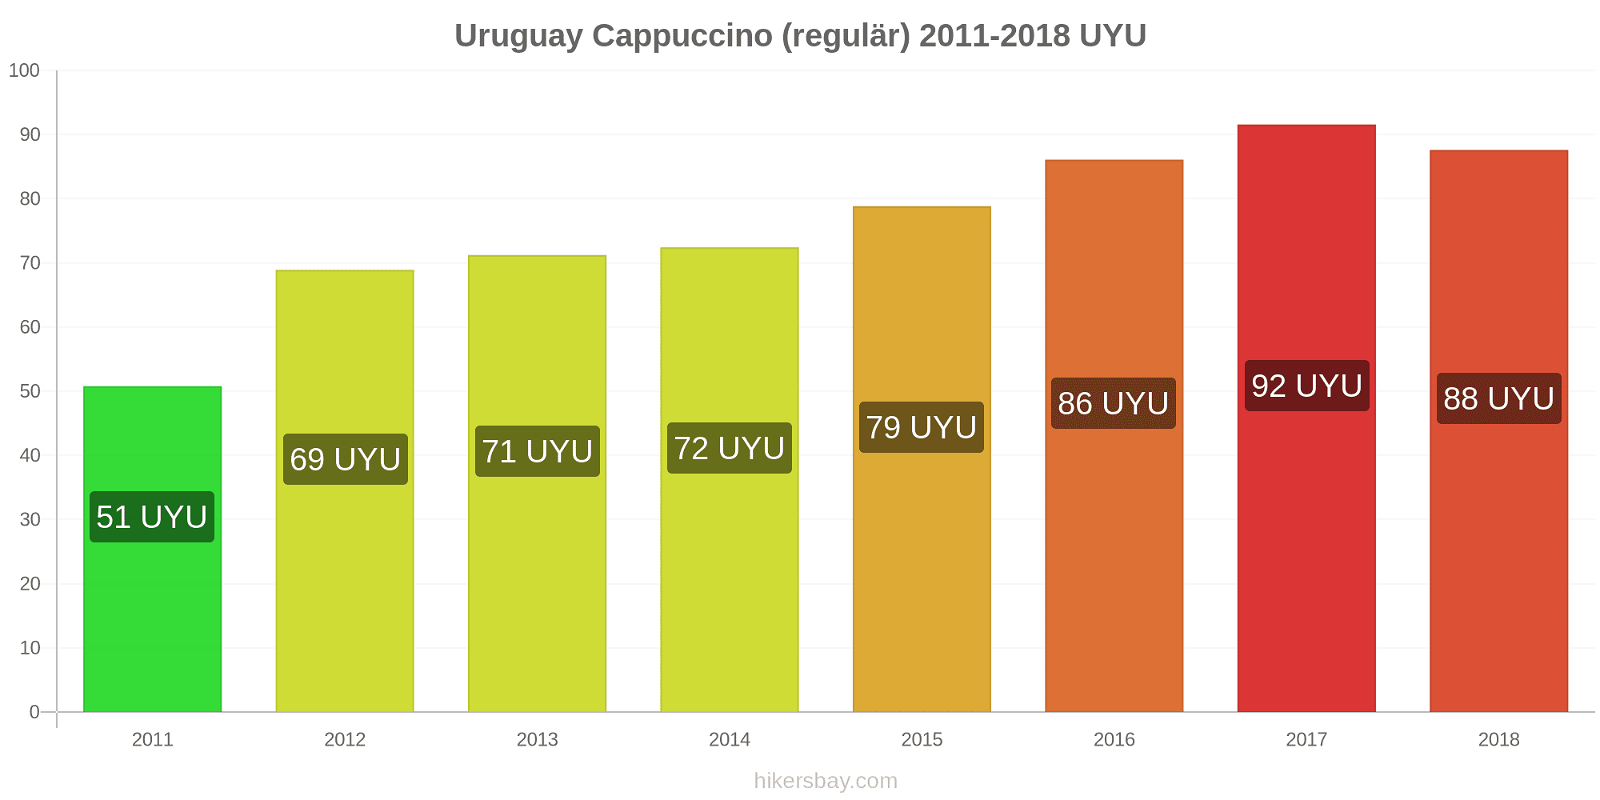 Uruguay Preisänderungen Cappuccino hikersbay.com